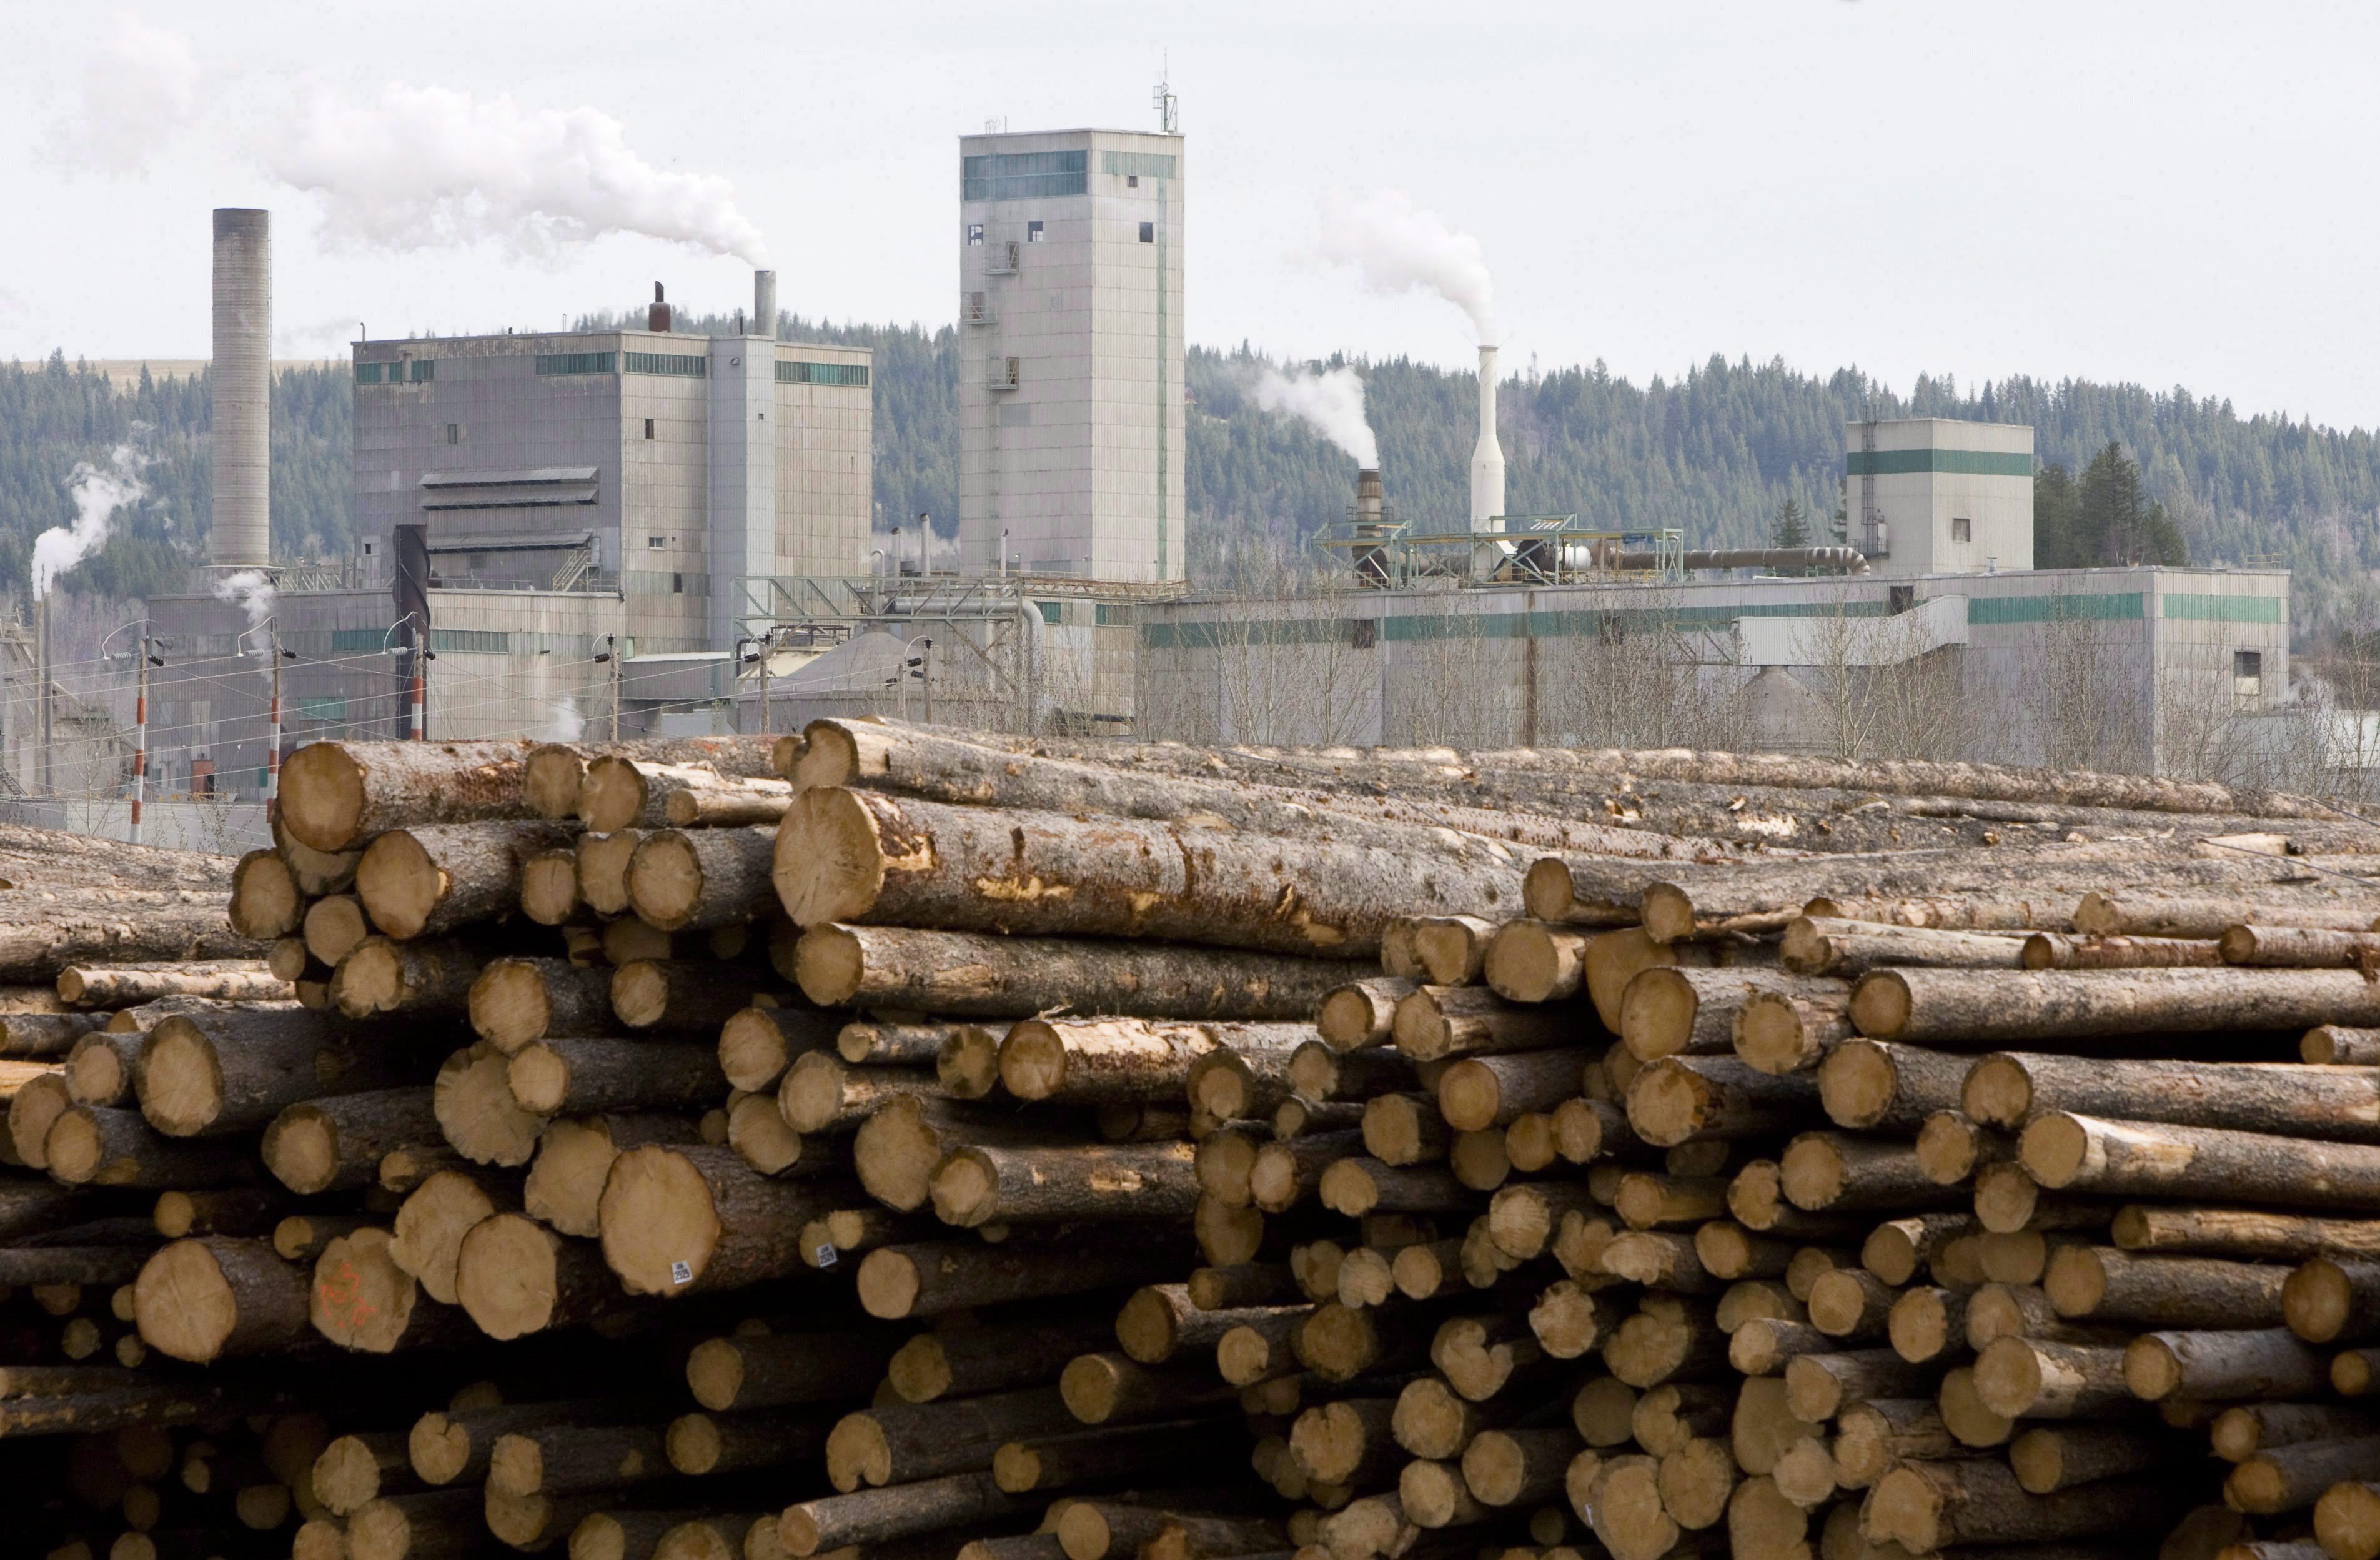 Деревообрабатывающая промышленность центры. Деревообрабатывающая и целлюлозно-бумажная промышленность Канады. Деревообрабатывающая промышленность Канады. Лесная промышленность Канады. Целлюлозно-бумажная промышленность Канады.